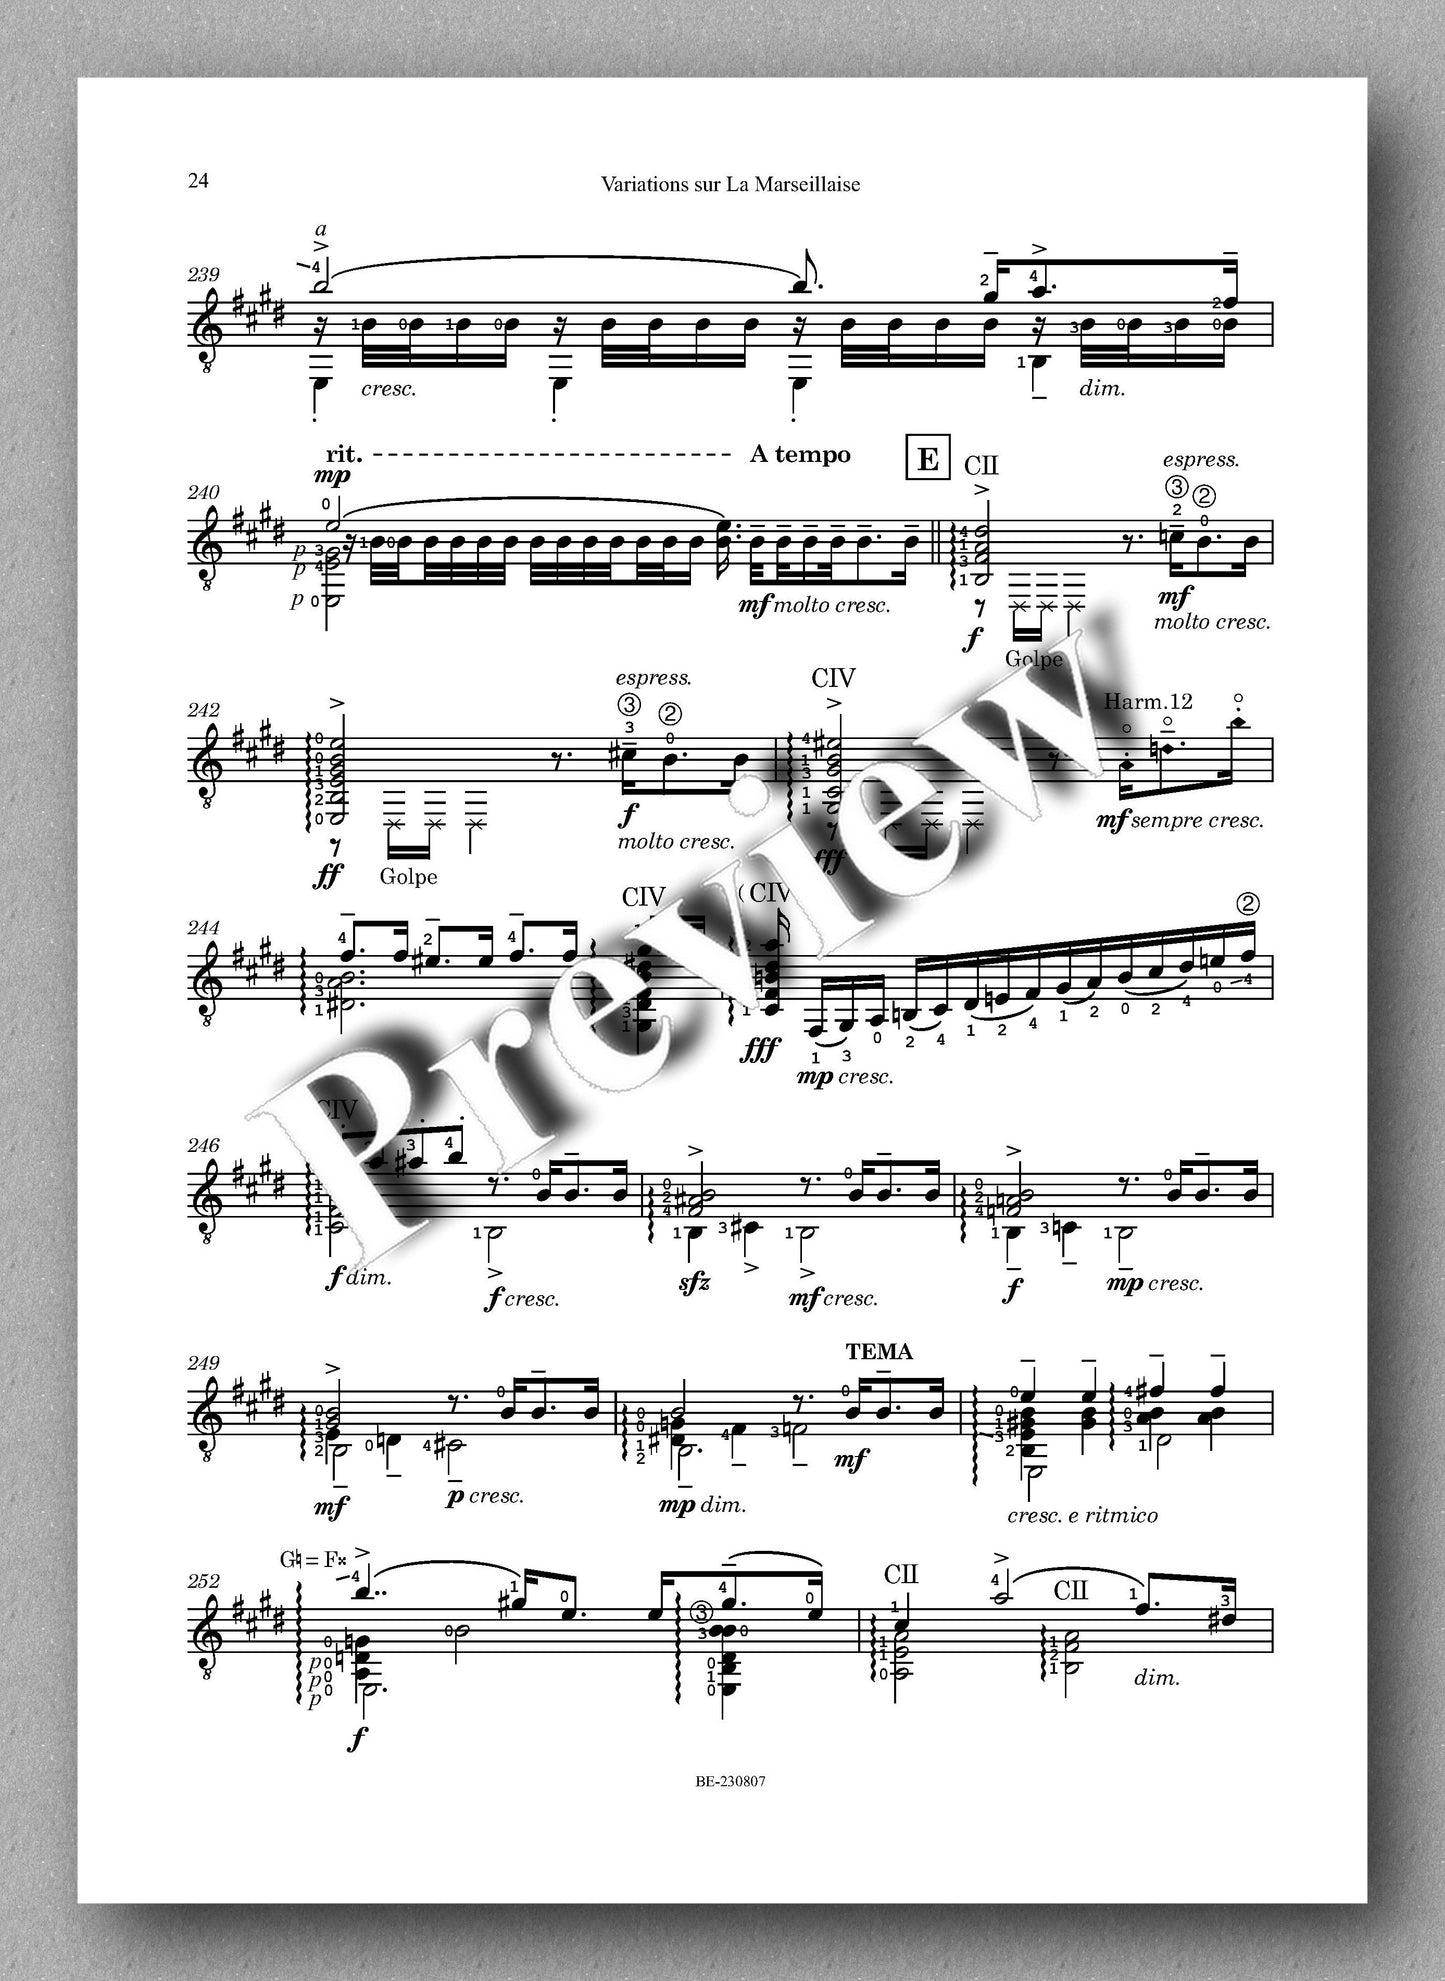 Colette Mourey, Variations sur La Marseillaise - preview of the music score 5